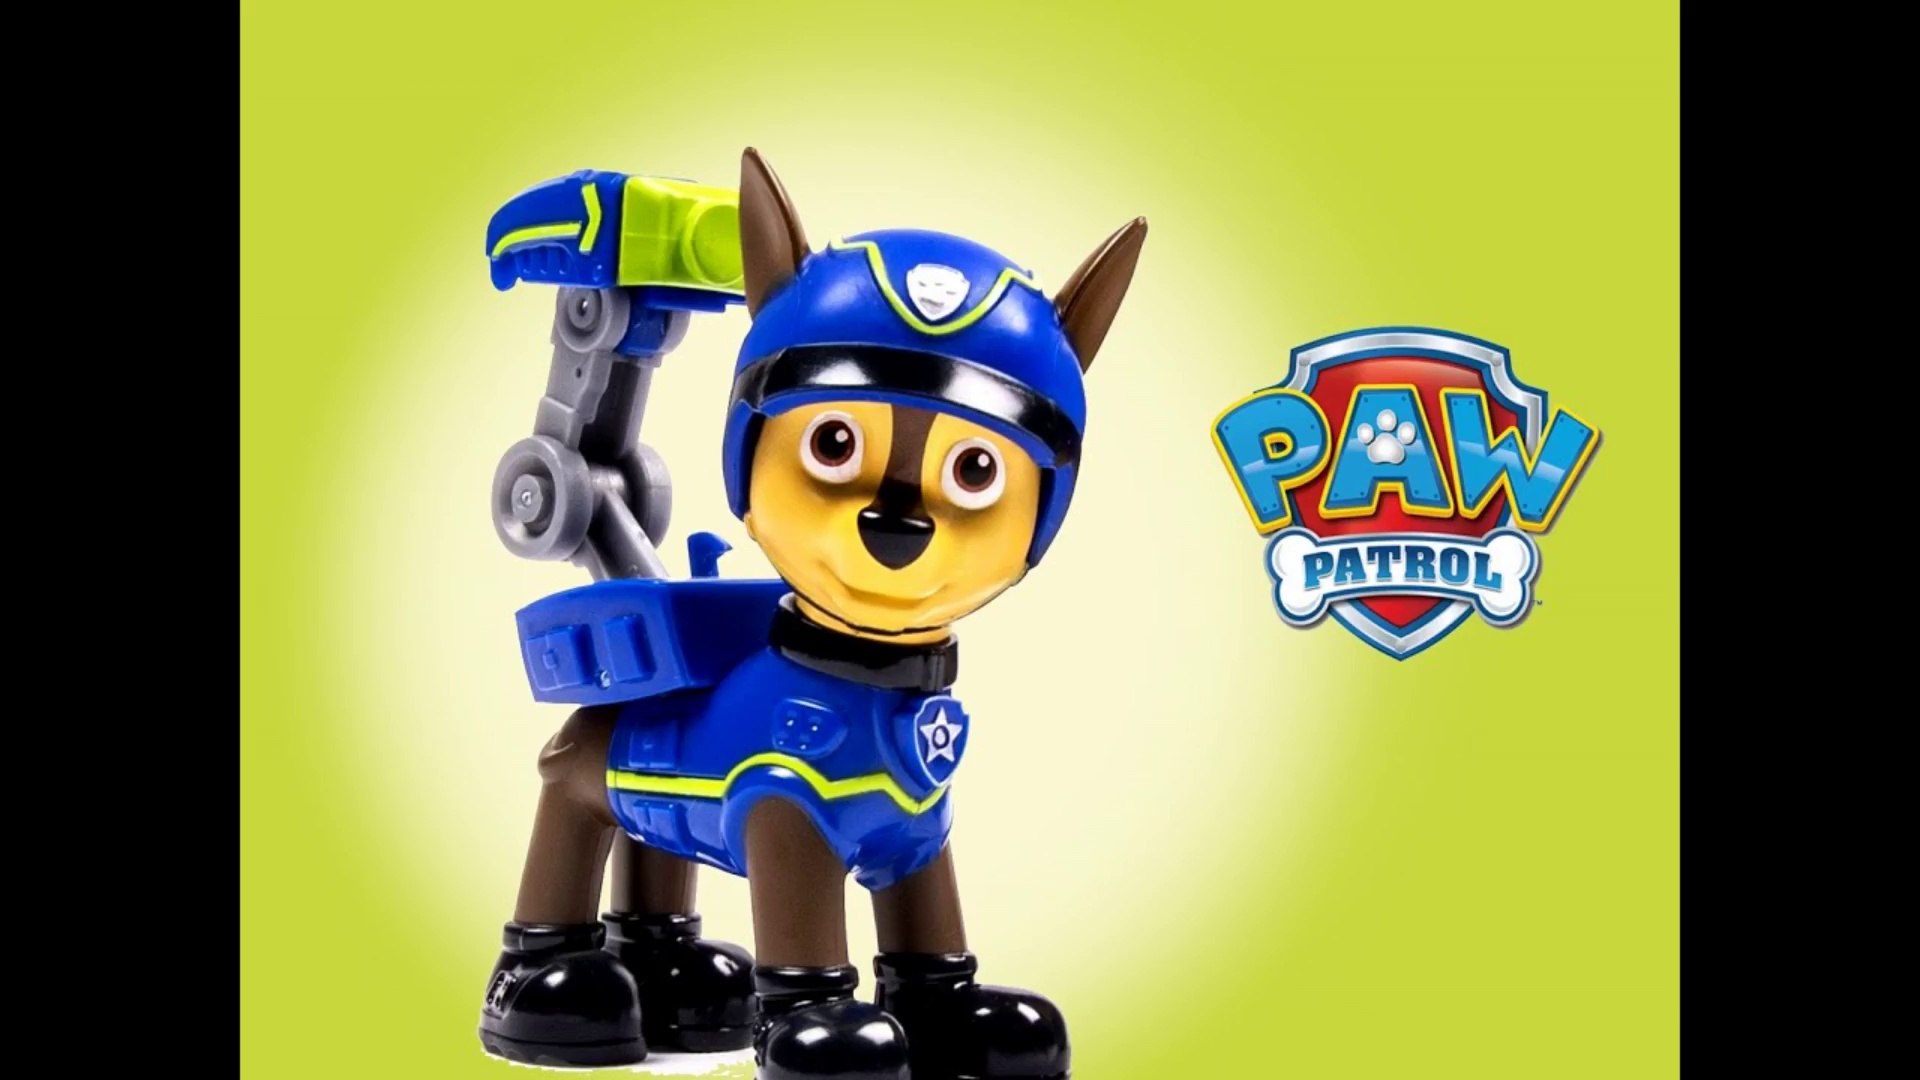 Genuine Paw Patrol Plastic Toys Puppy PATROL Police figuras de acción títeres de Chase 